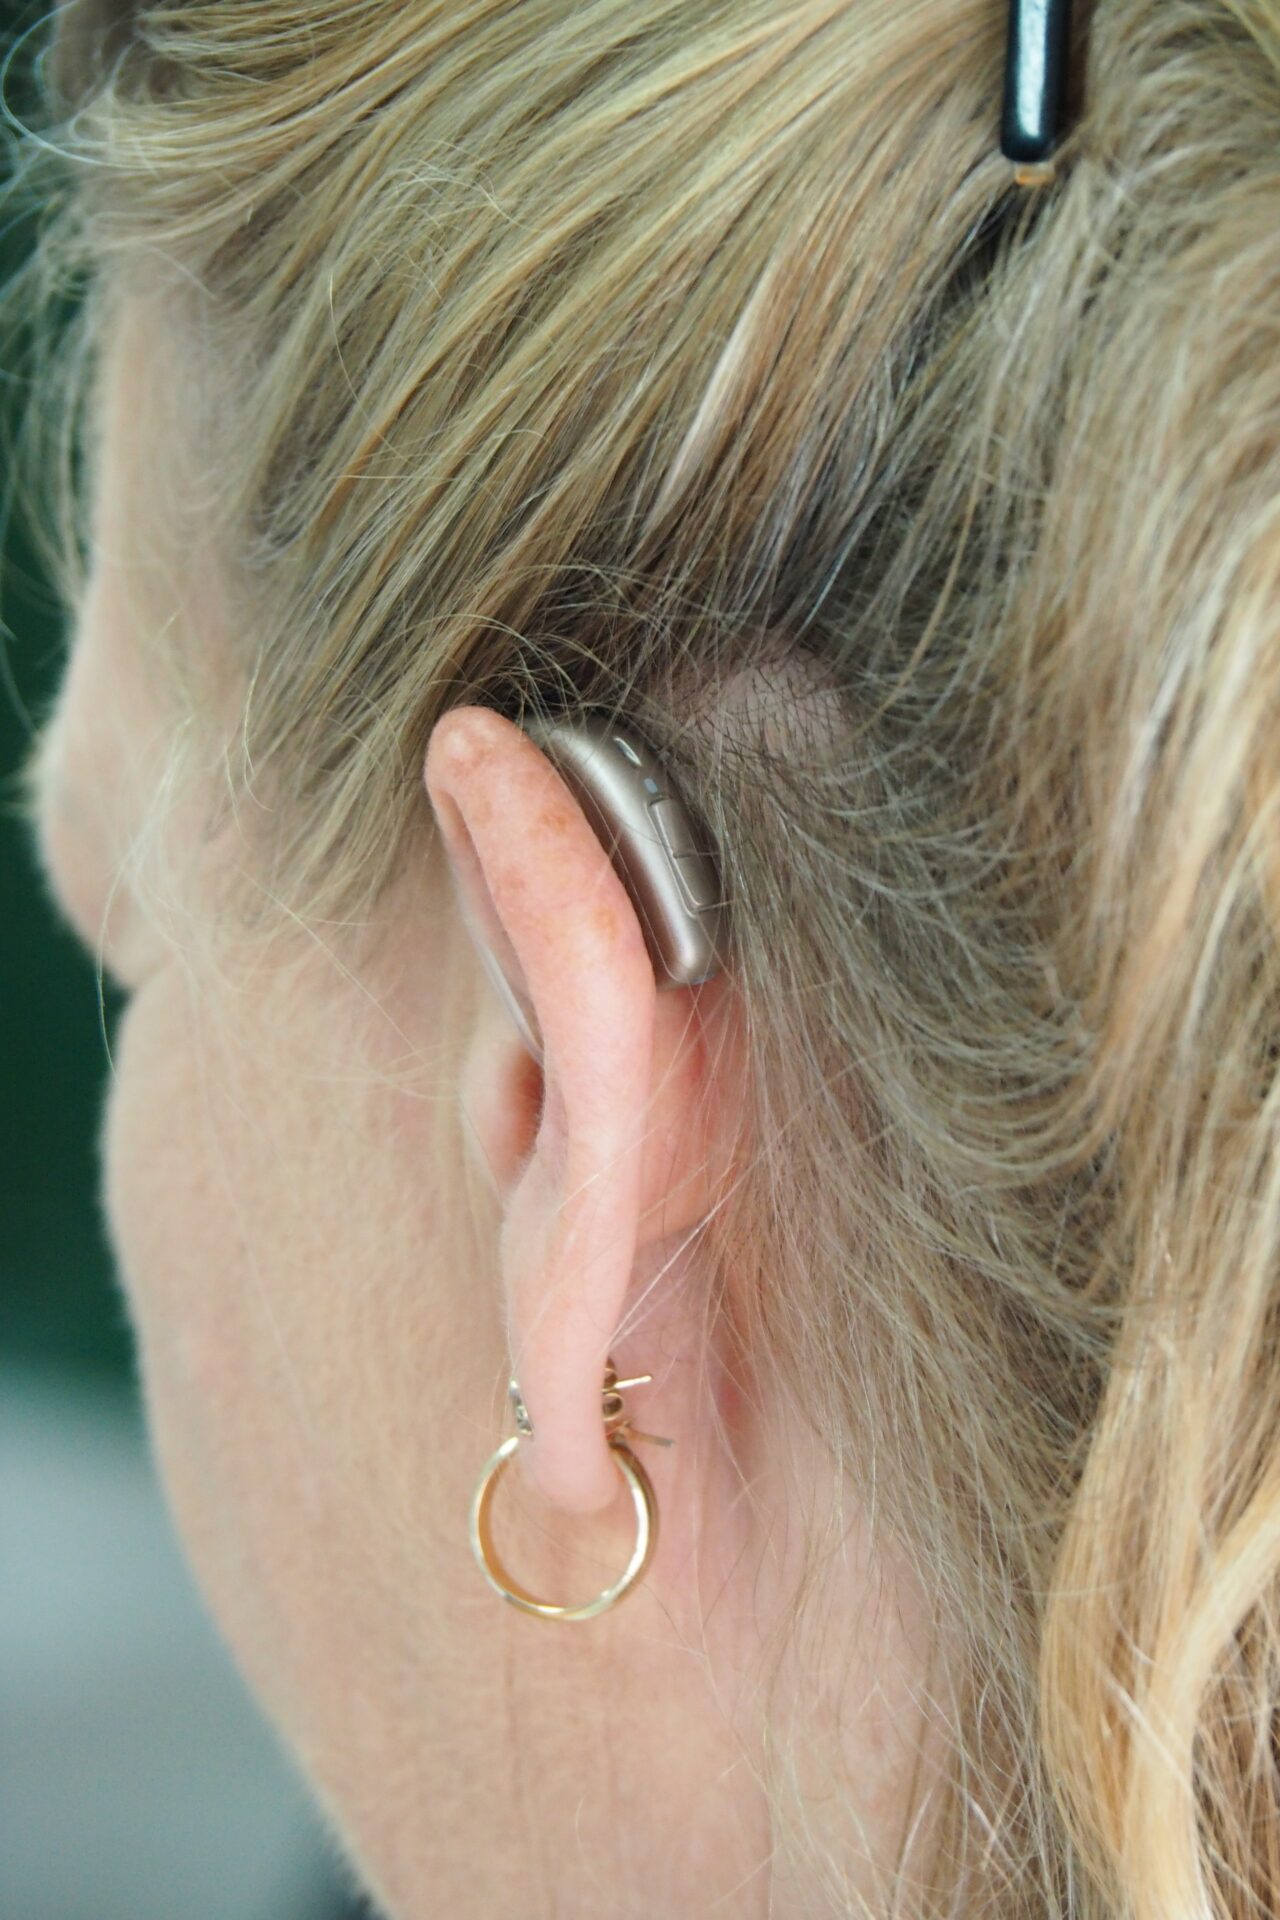 Das Hörgerät ist eine Bereichung für all diejenigen, die unter einer Beeinträchtigung des Gehörs leiden. Bildquelle: © Logan Weaver / Unsplash.com